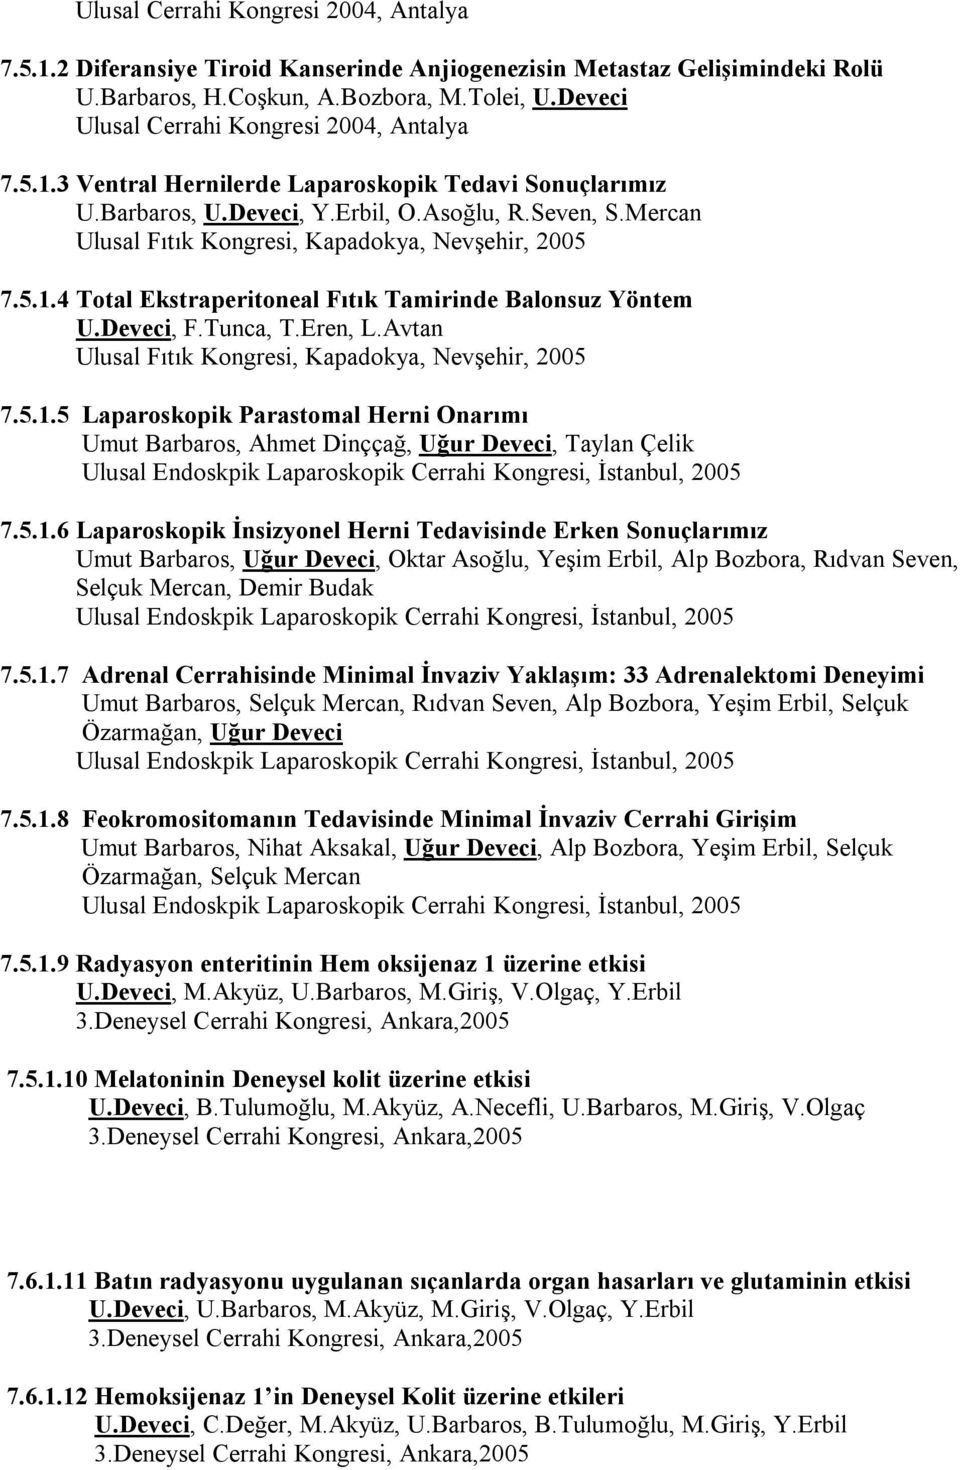 Mercan Ulusal Fıtık Kongresi, Kapadokya, Nevşehir, 2005 7.5.1.4 Total Ekstraperitoneal Fıtık Tamirinde Balonsuz Yöntem U.Deveci, F.Tunca, T.Eren, L.